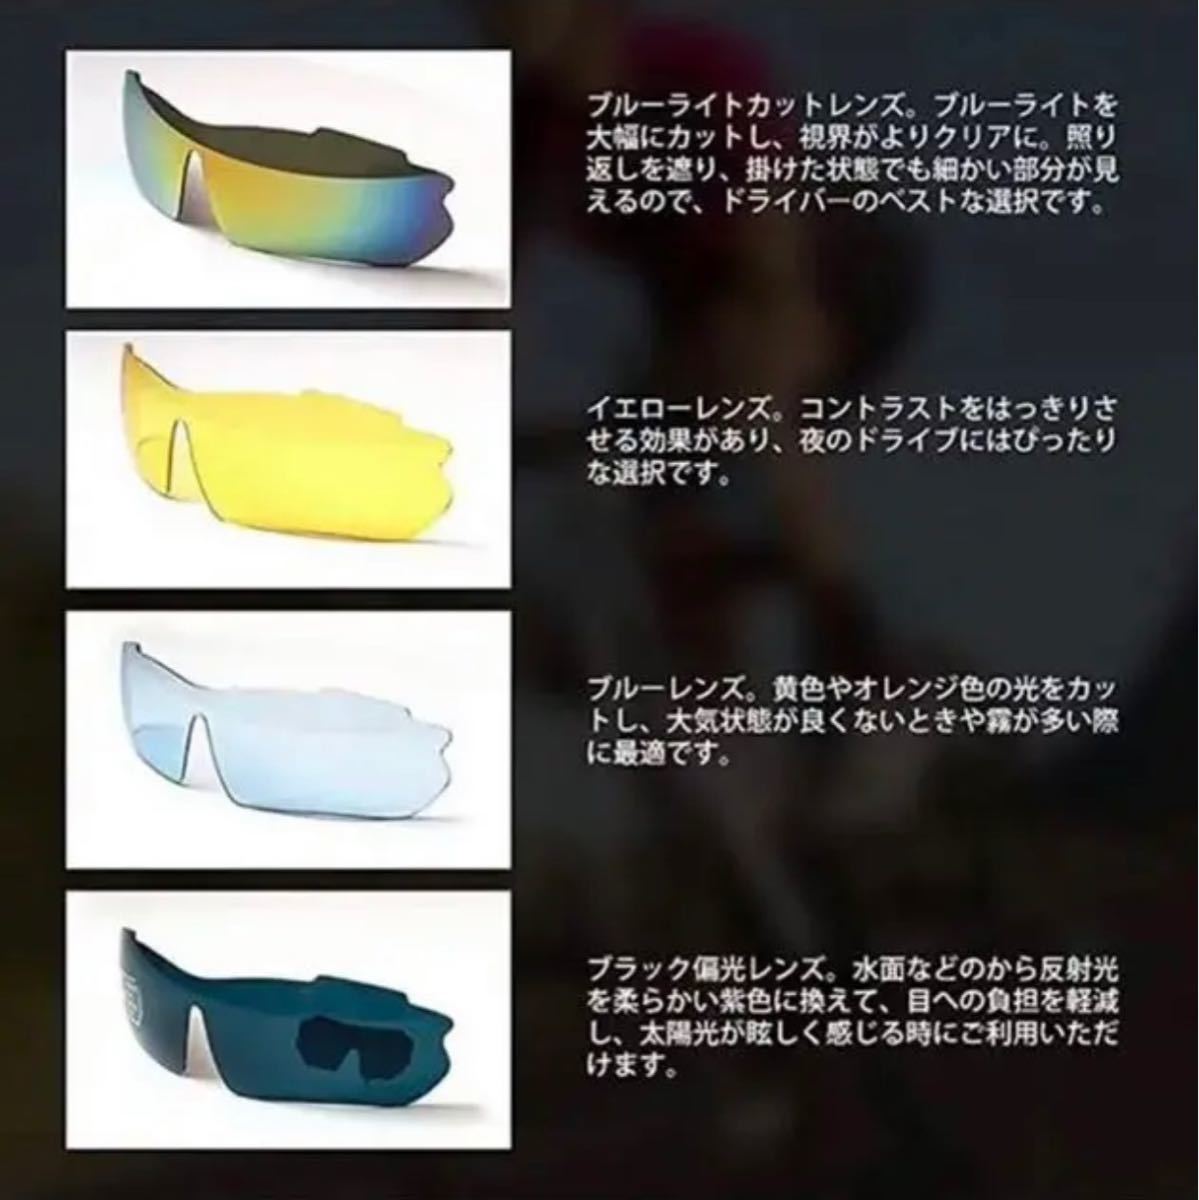 新品偏光レンズ スポーツサングラス フルセット専用交換レンズ5枚 メンズ レディース